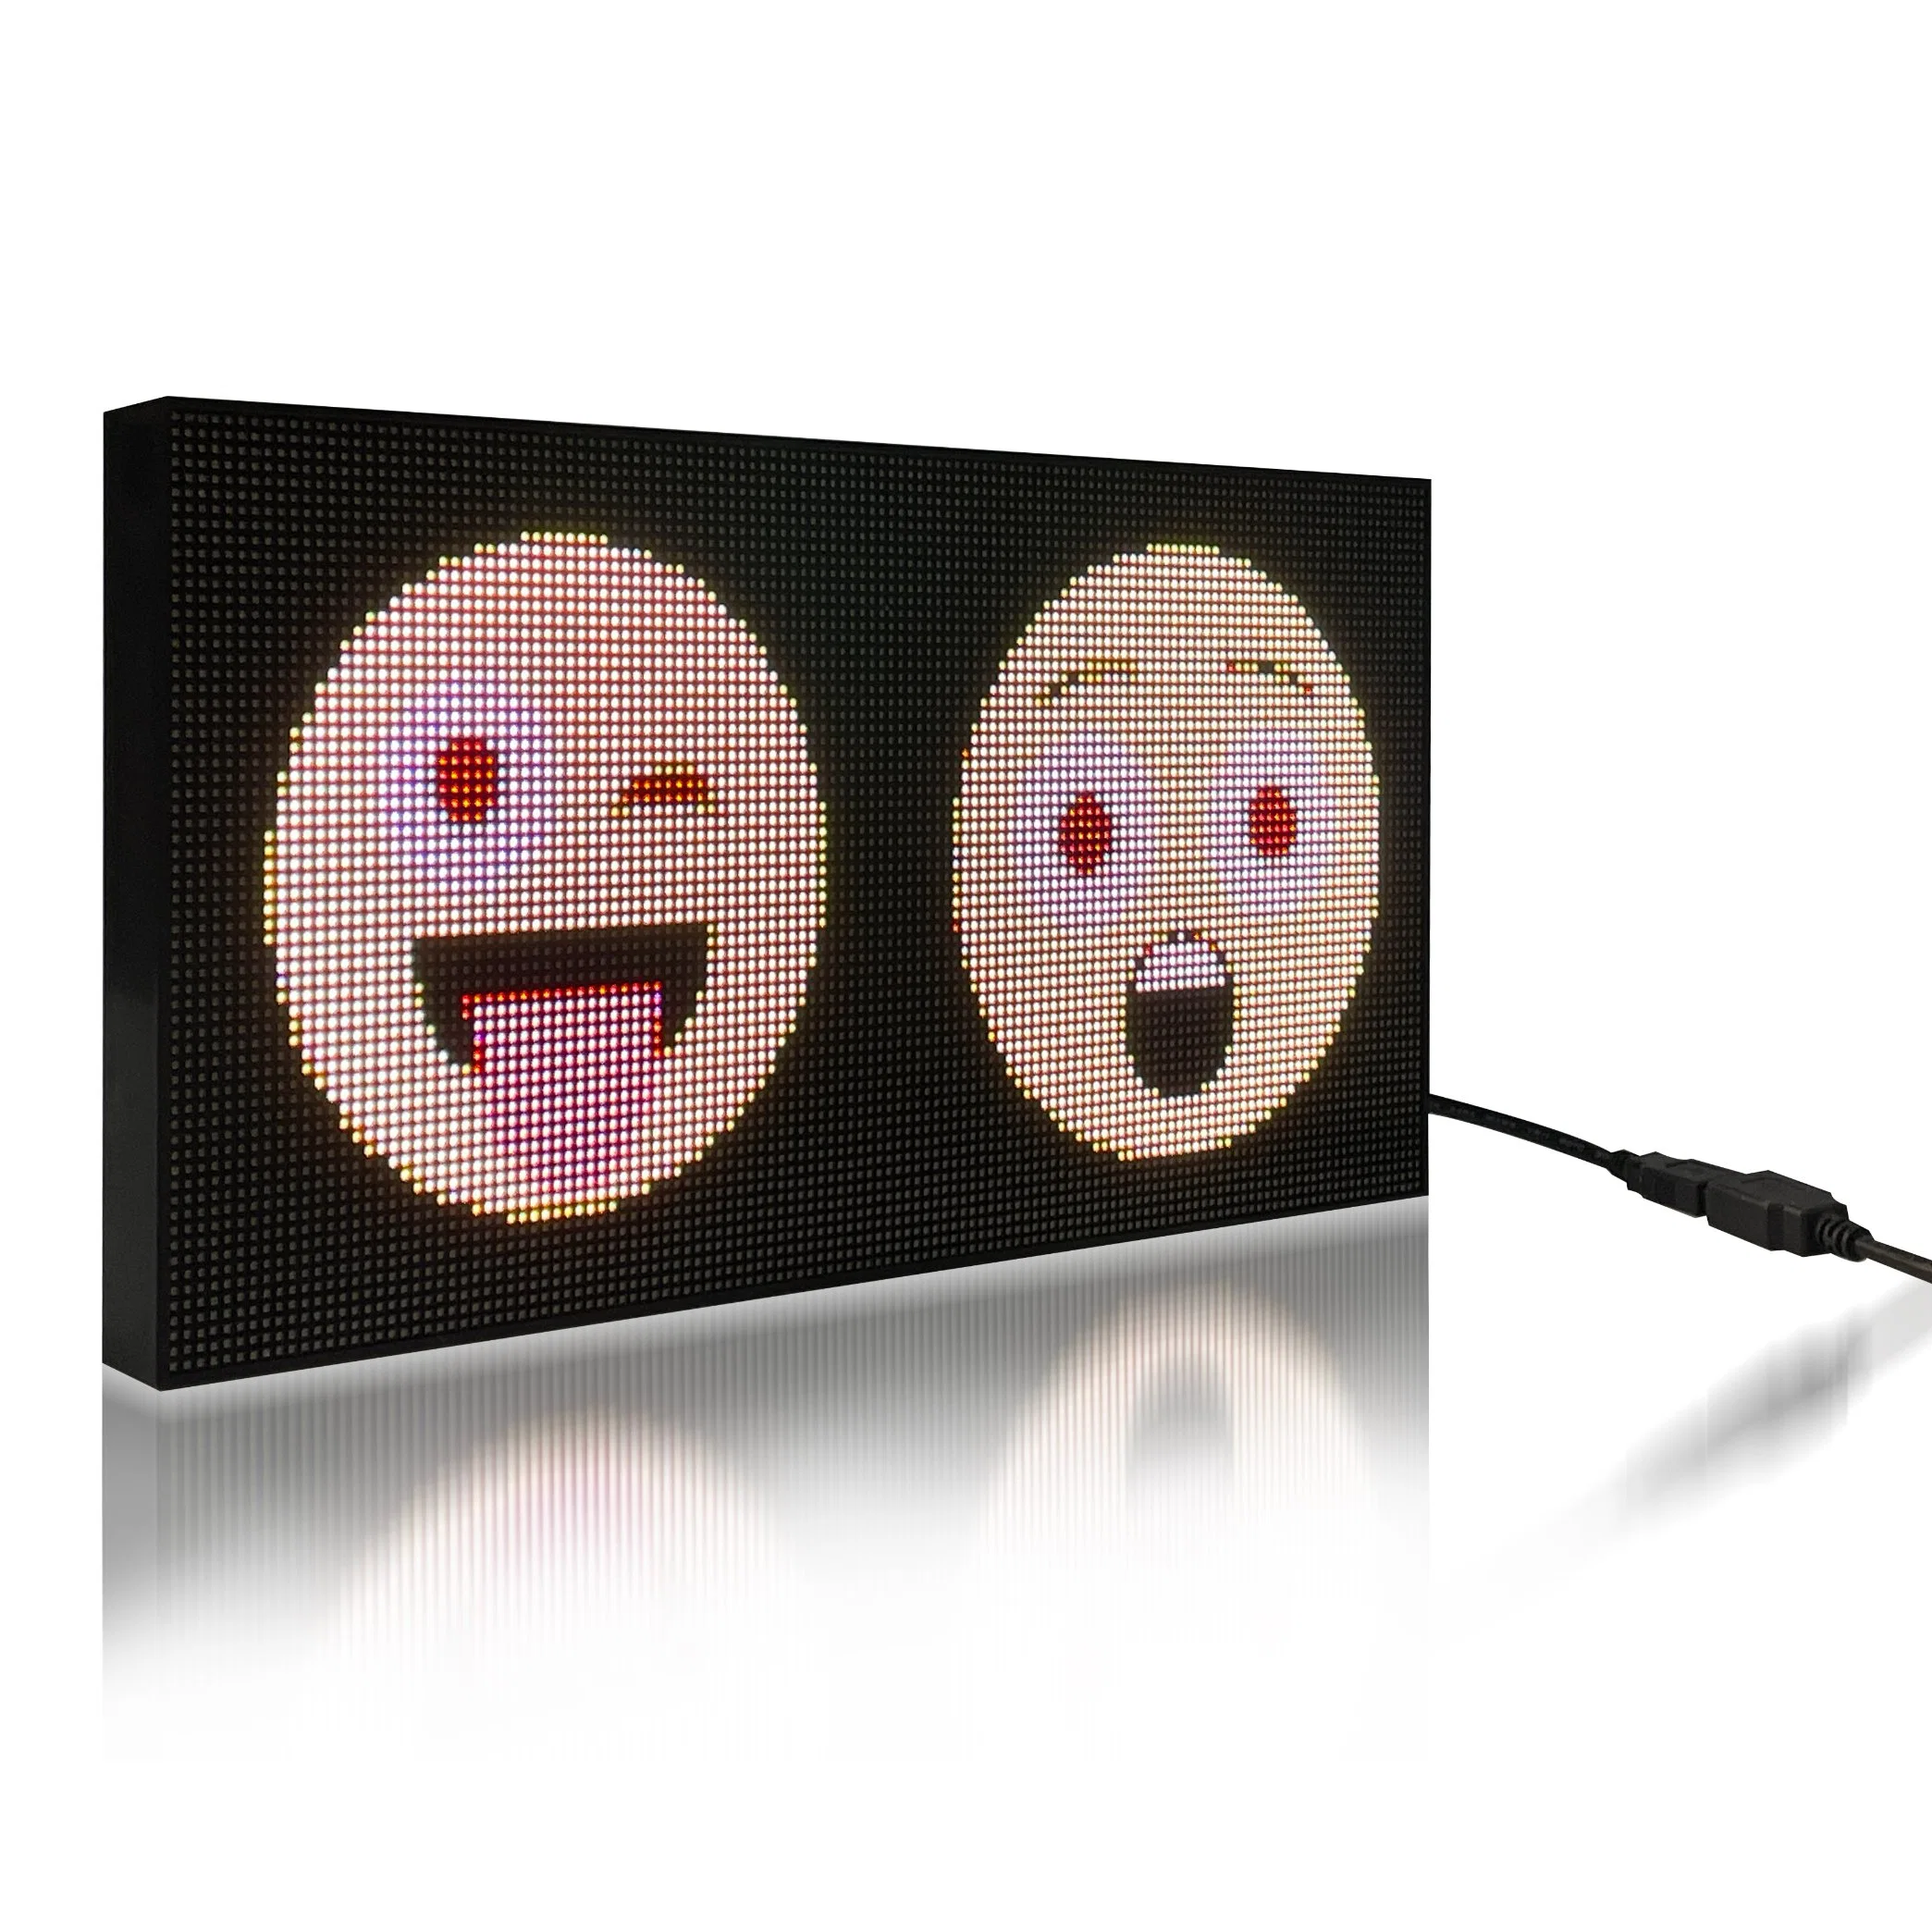 Программируемая светодиодная панель Wall LED экран Реклама на стендах доска слова